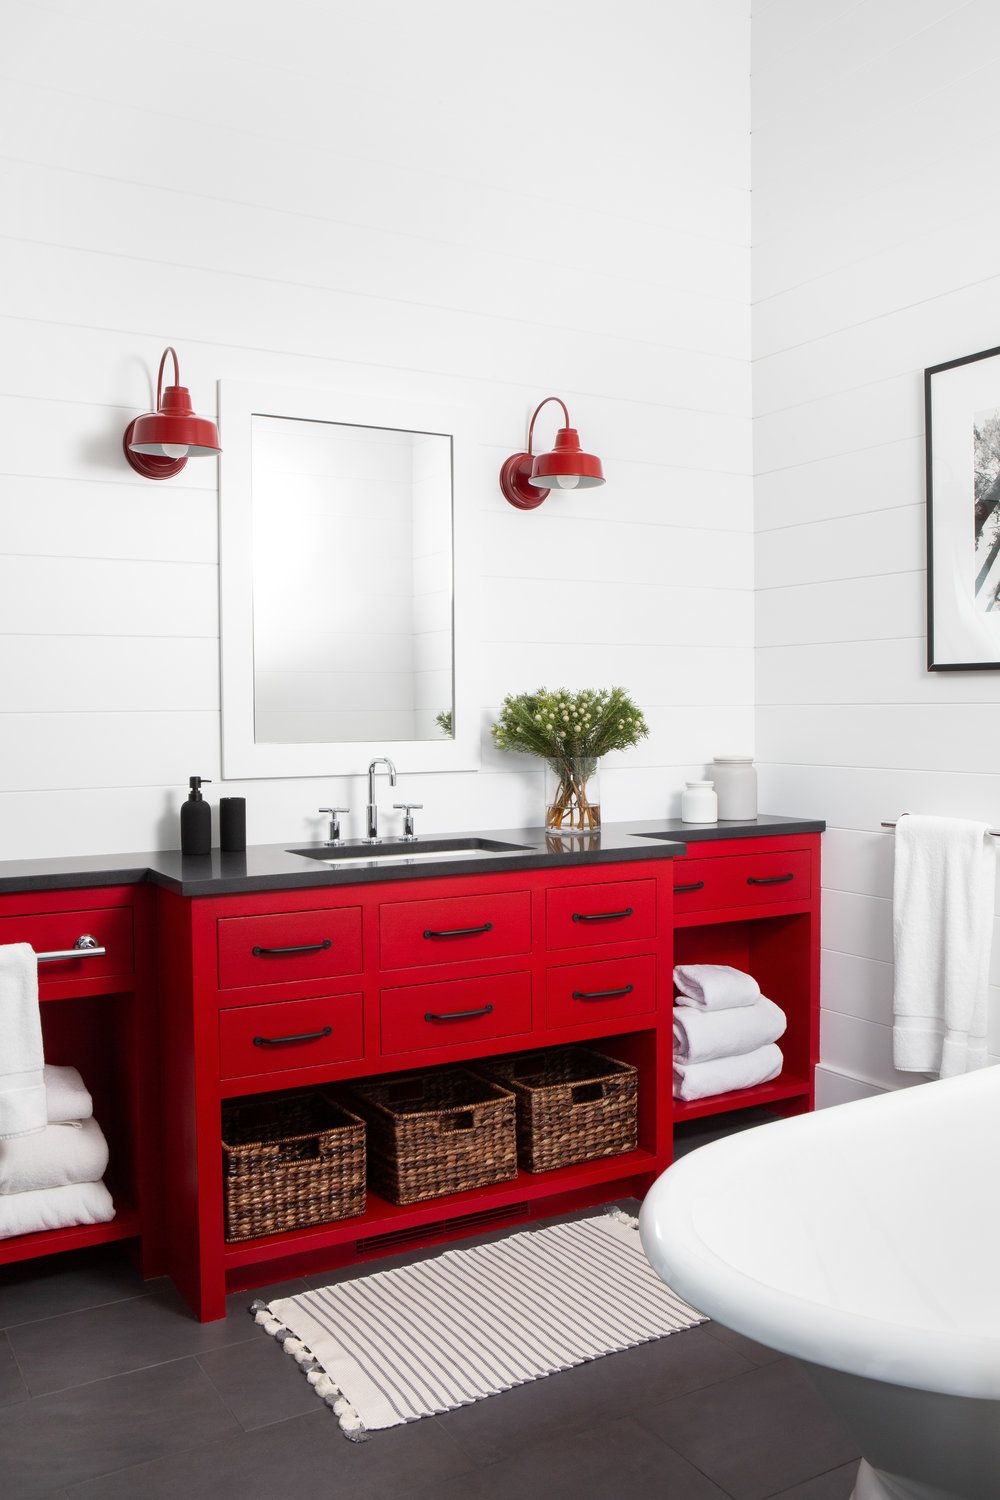 Với tông màu trắng chủ đạo, chiếc tủ sơn đỏ bỗng rực rỡ cả một góc phòng tắm. Bộ đèn chiếu sáng gắn tường đối xứng màu đỏ là điểm cộng hoàn hảo cho khu vực này.